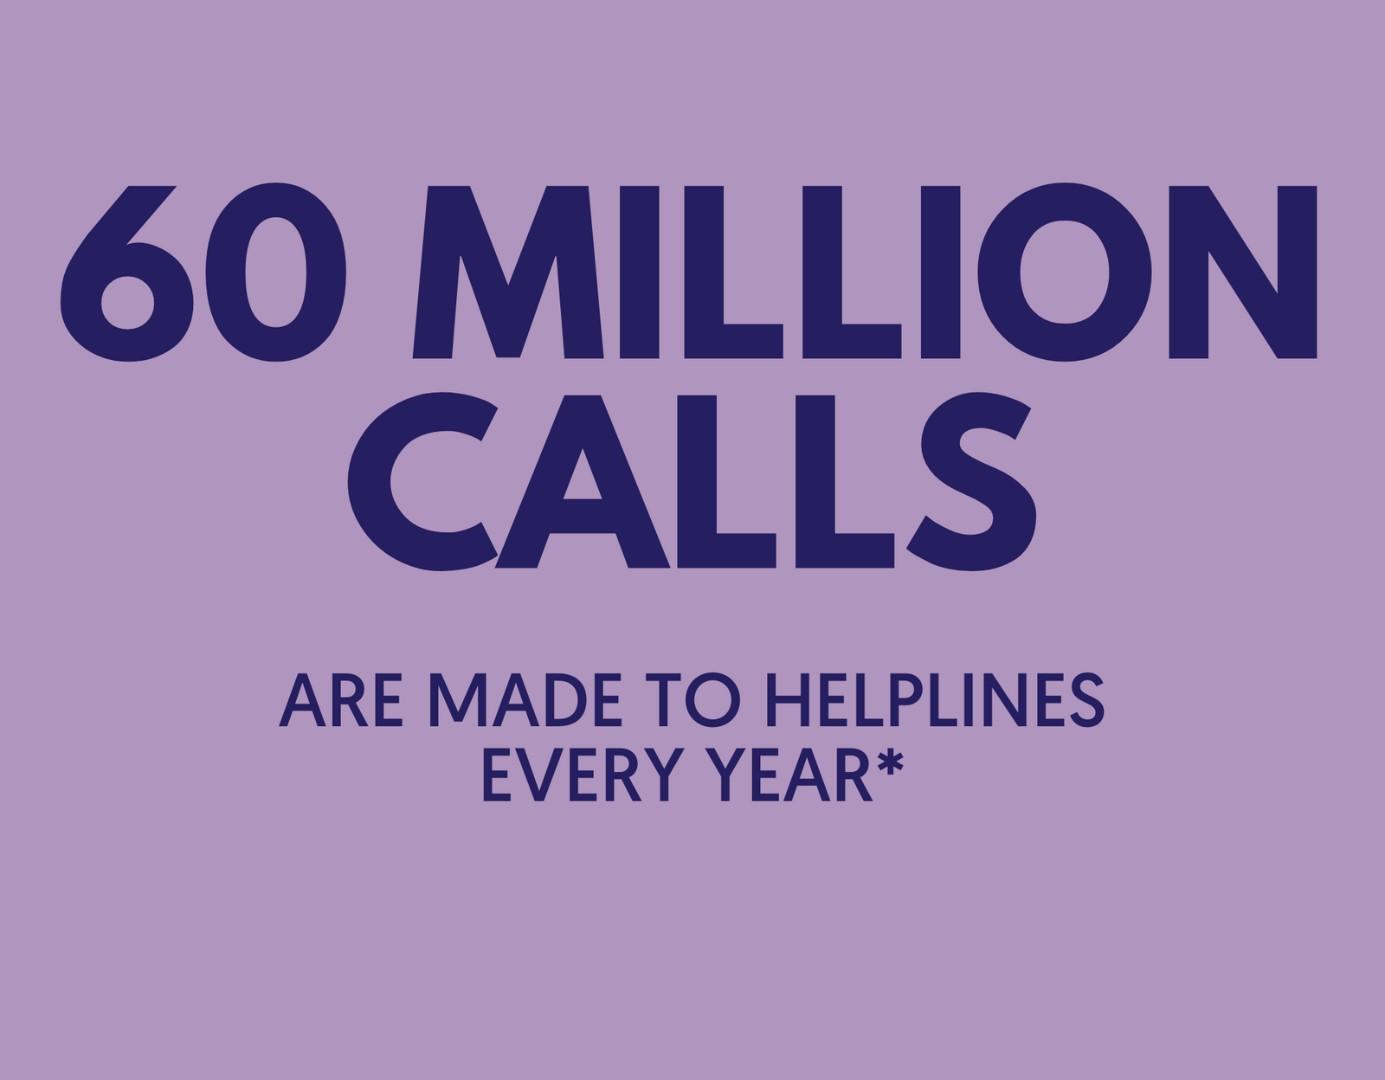 60 million calls to helplines hero